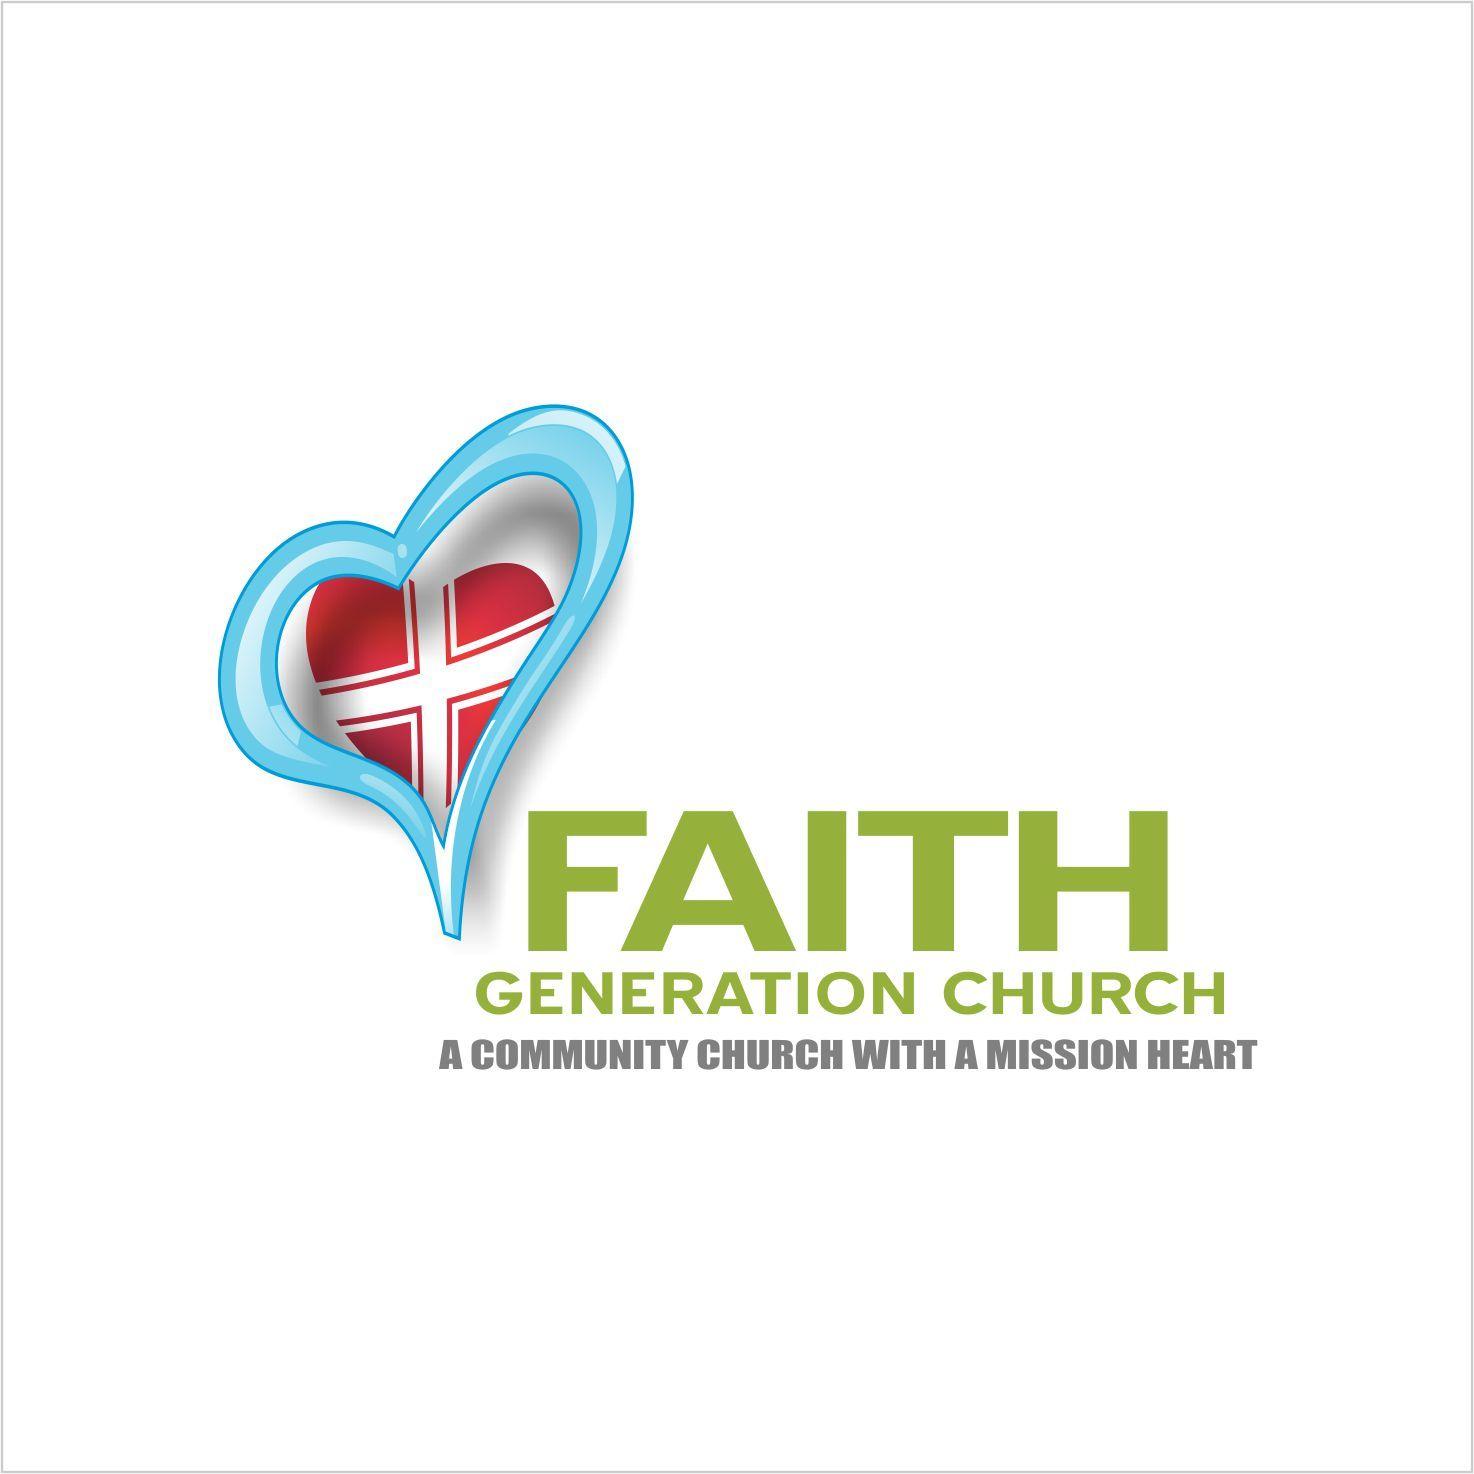 Tag Church Logo - Church Logo Design for Faith Generation Church (tag line...A ...